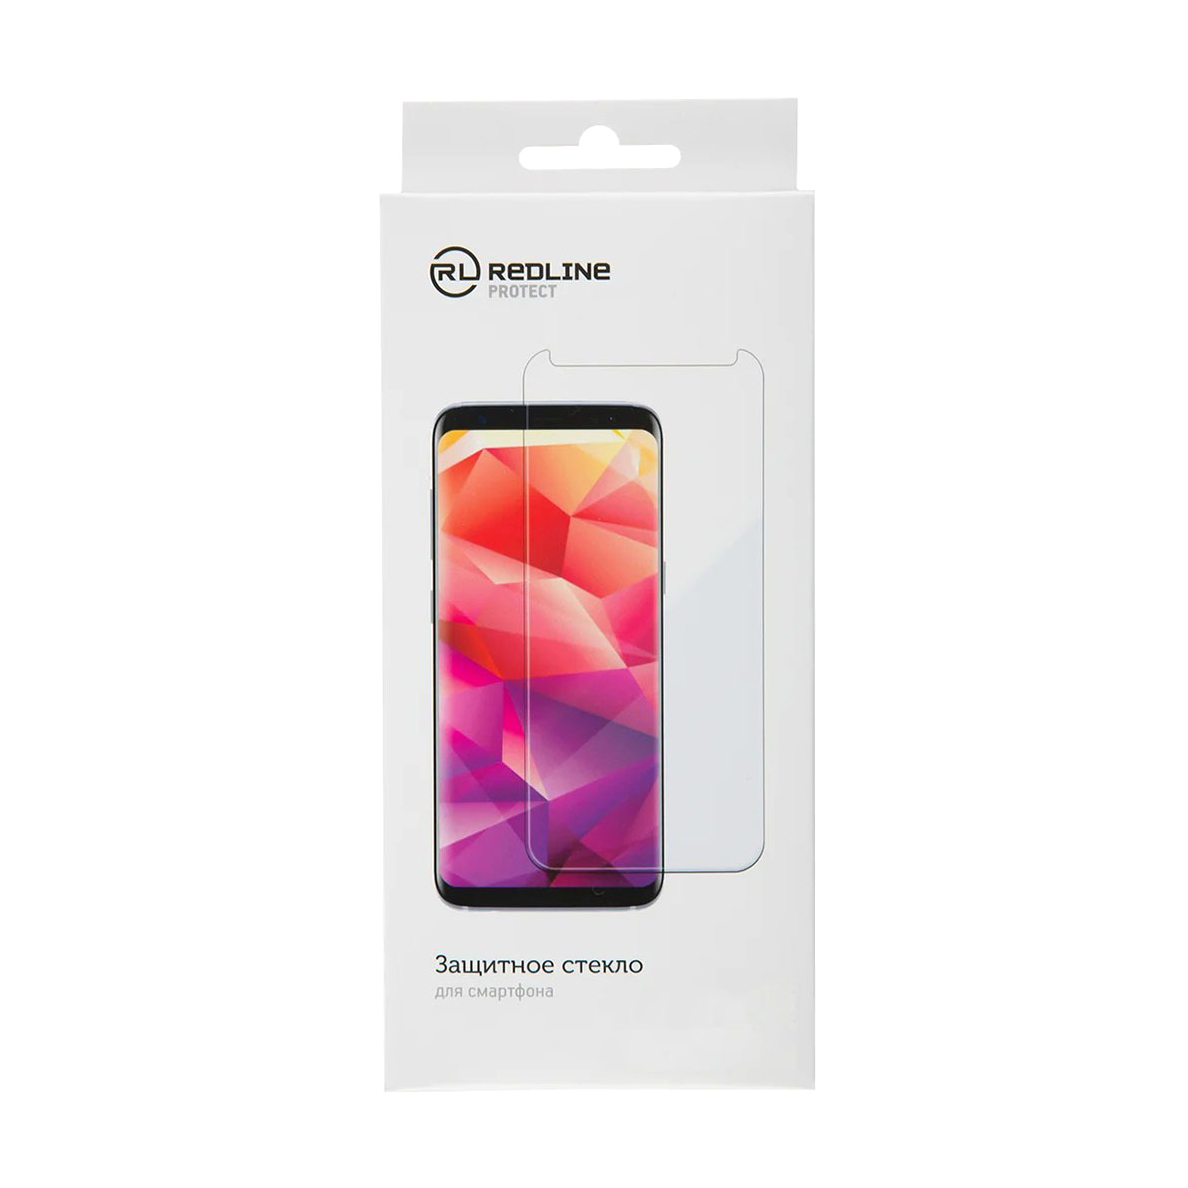 Защитное стекло Red Line Tempered Glass для Samsung Galaxy A10, цвет прозрачный